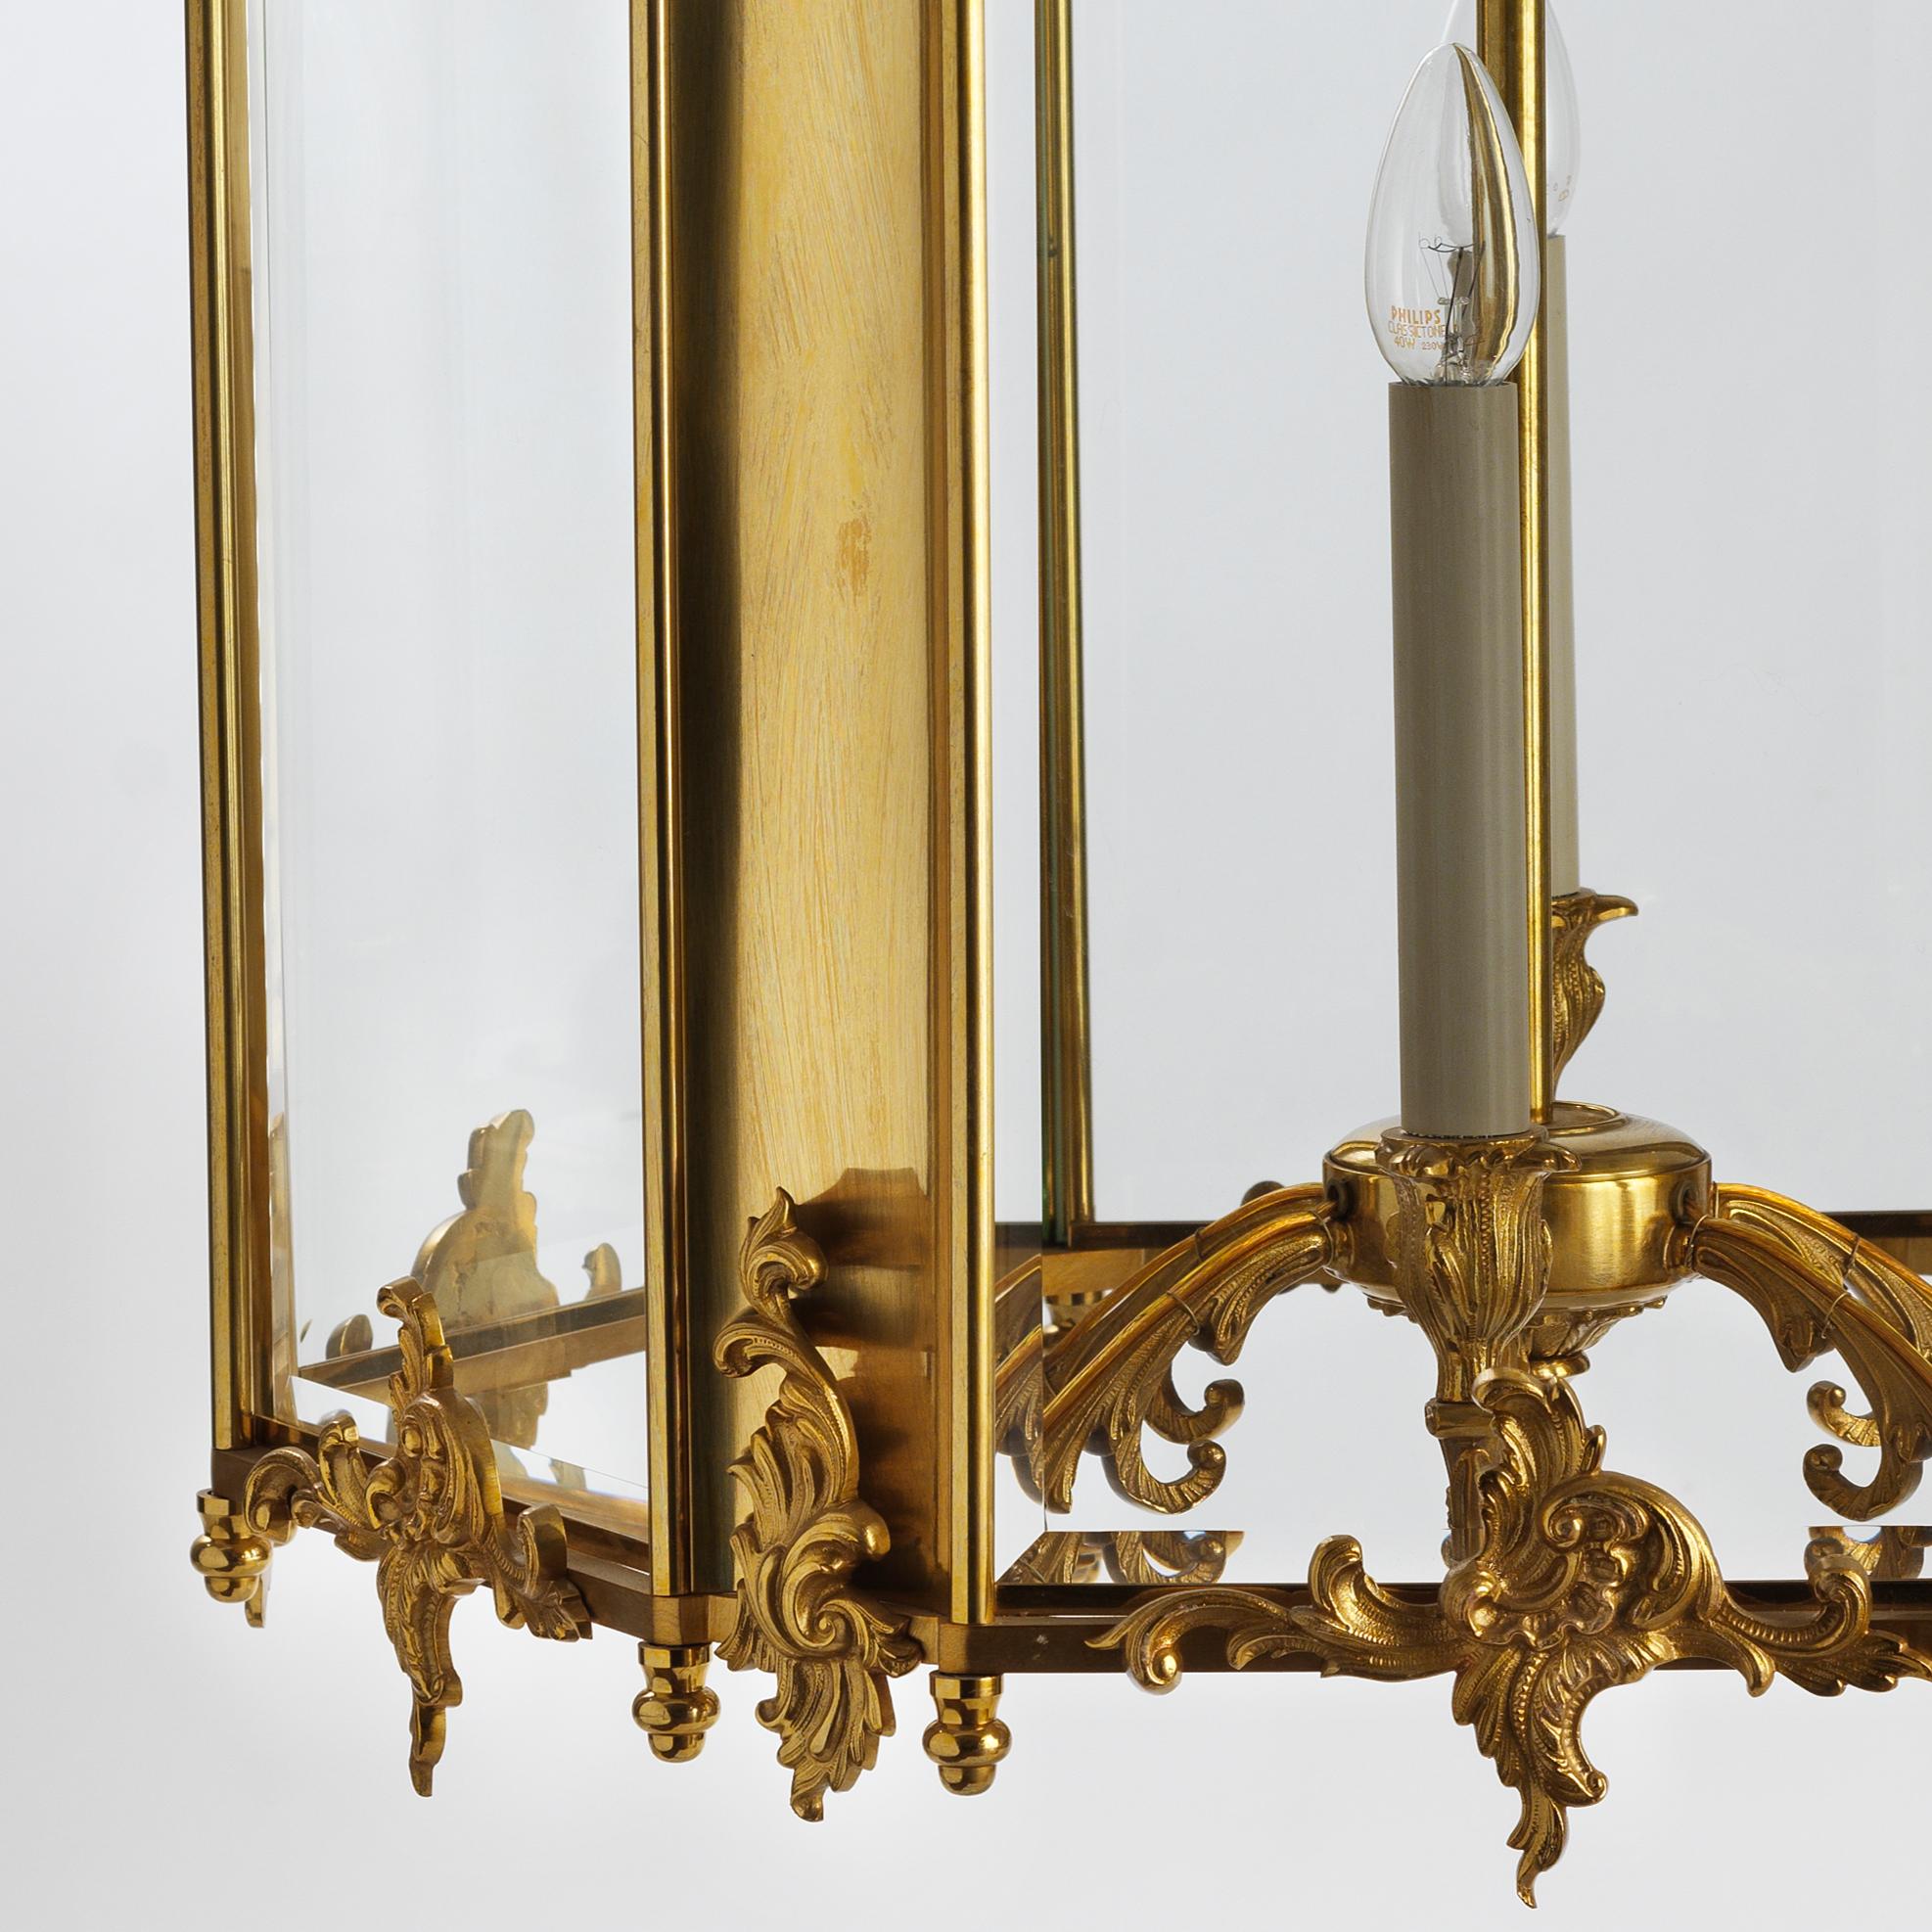 Cette lanterne en bronze doré de style Rococo français finement ciselé par Gherardo Degli Albizzi a six lumières et présente des caractéristiques classiques de cette période telles que des feuilles d'acanthe et une décoration végétale sur toute la